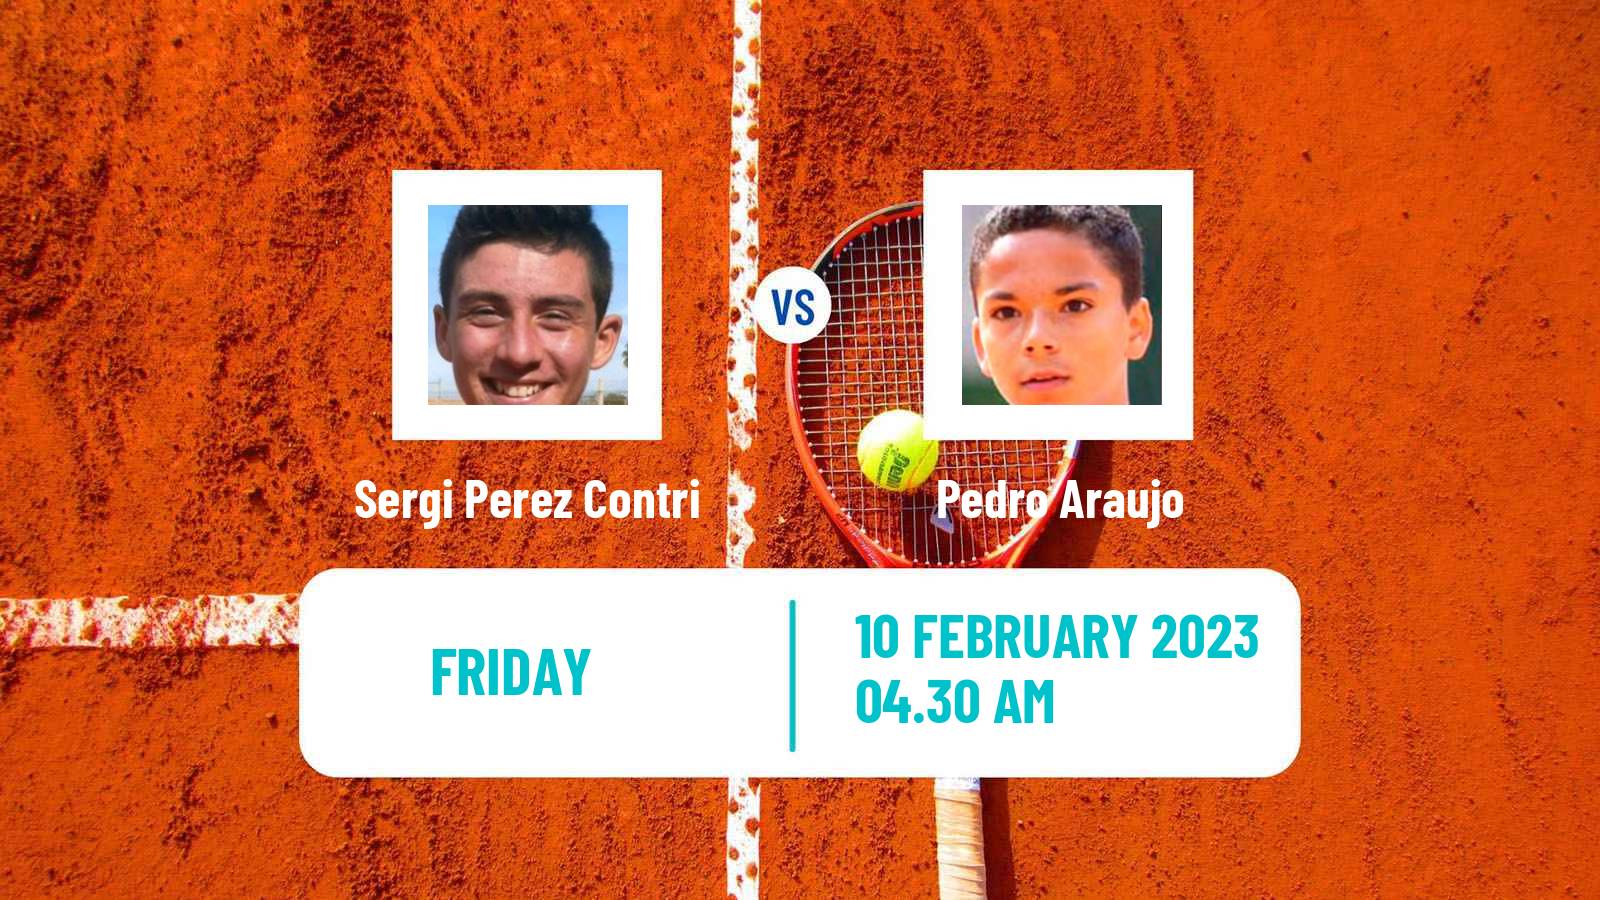 Tennis ITF Tournaments Sergi Perez Contri - Pedro Araujo